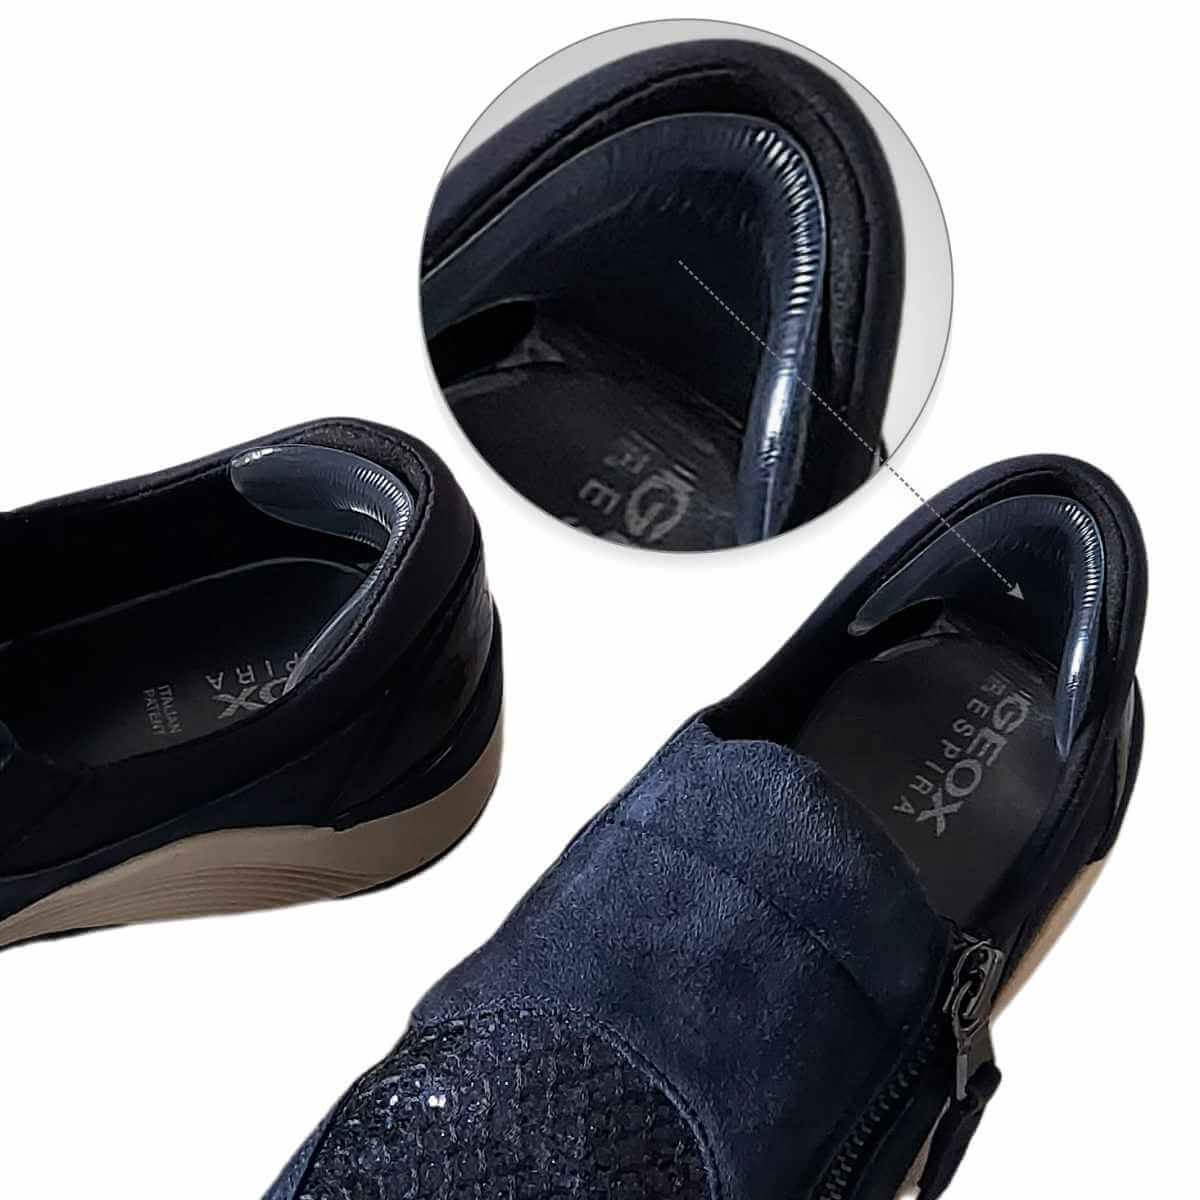 GEL Hælindlæg er en sål til hælkappen, der dæmper stød i hælen. Hælbeskytter til sko med støddæmpende GEL hælpude mod ømme hæle, hælspore, vabler og gnavsår. 1 Par - Lav pris.